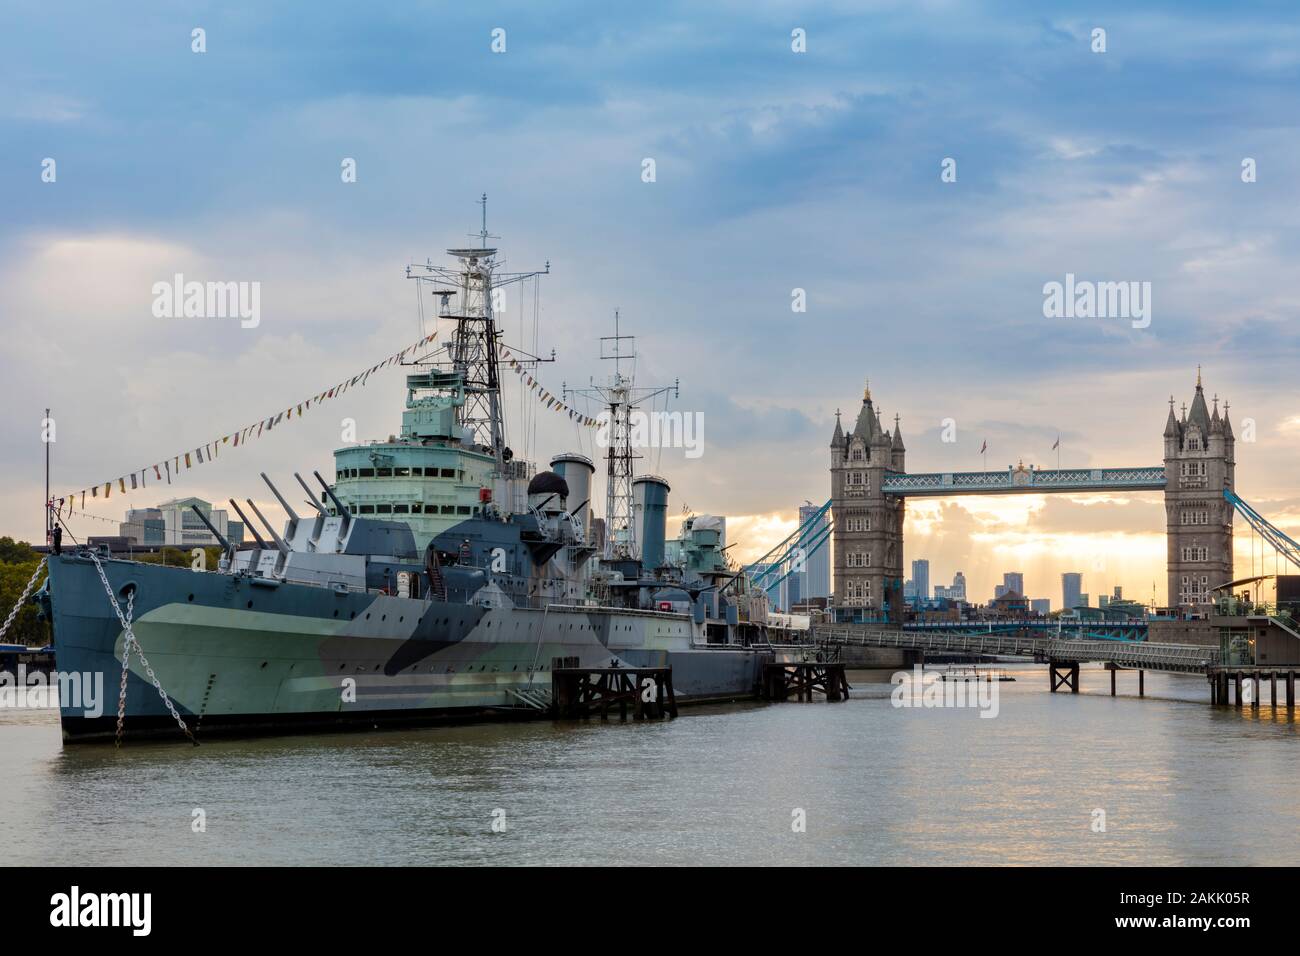 II Guerra Mondiale Town-Class incrociatore leggero HMS Belfast (comm. 1938), ora un museo galleggiante vicino al Tower Bridge sul fiume Tamigi, London, England, Regno Unito Foto Stock